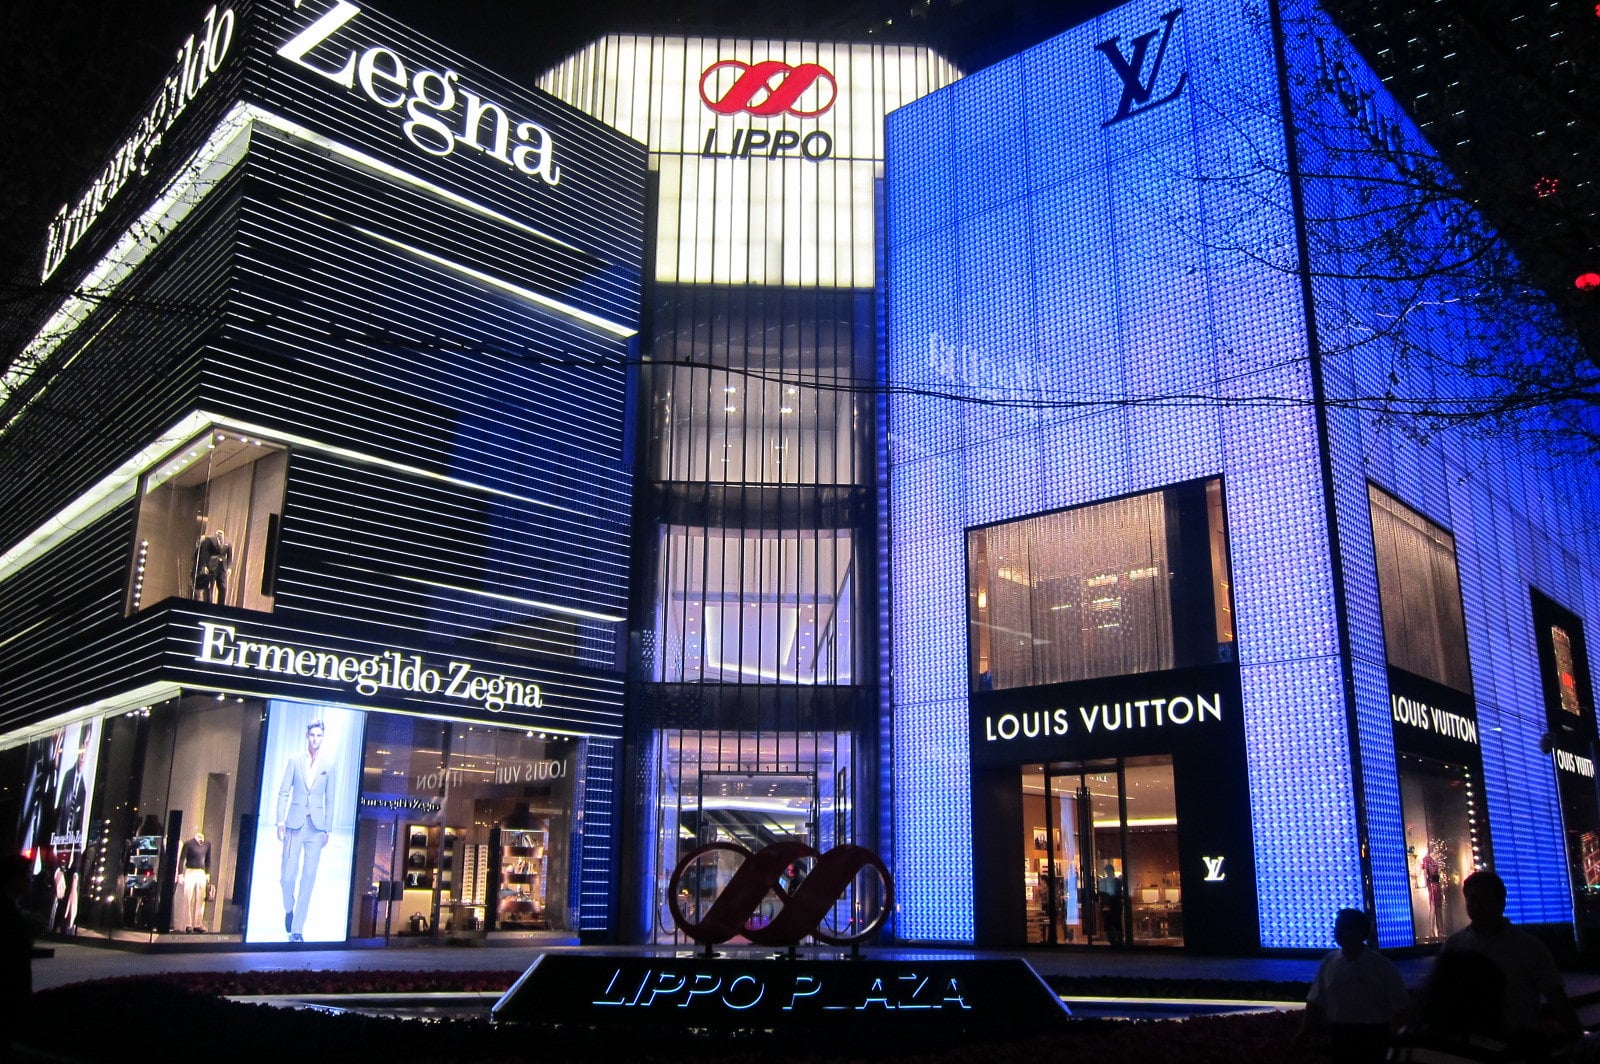 Louis Vuitton Shanghai Grand Gateway Store Store in Shanghai, China